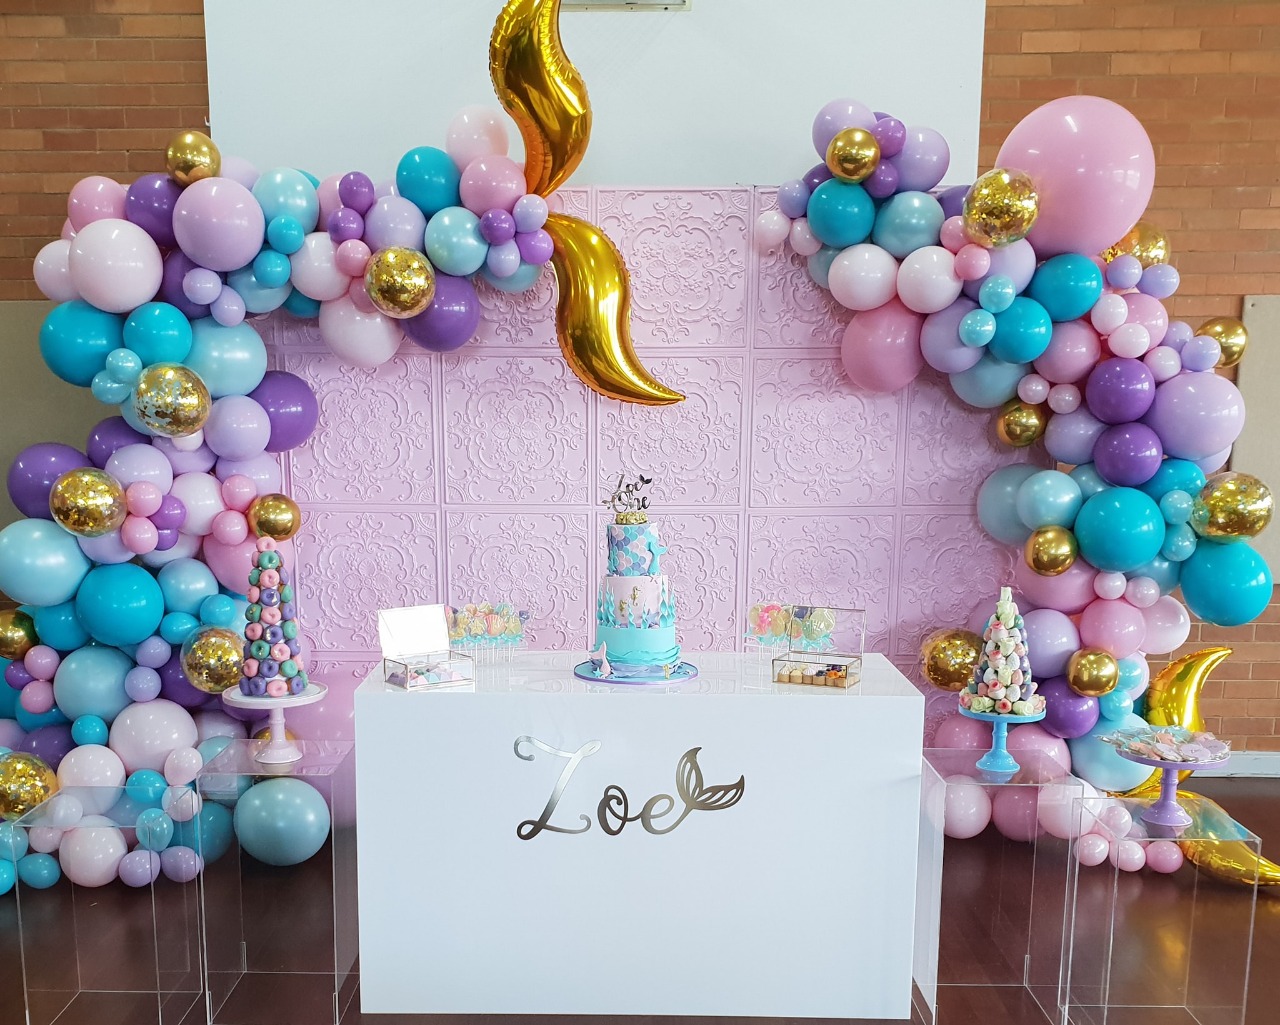 50 Balão Bexiga 8 Pol (Azul Tiffany + Rosa Baby + Lilás) + 25 Balão Dourado 5 Pol Cromado Metalizado